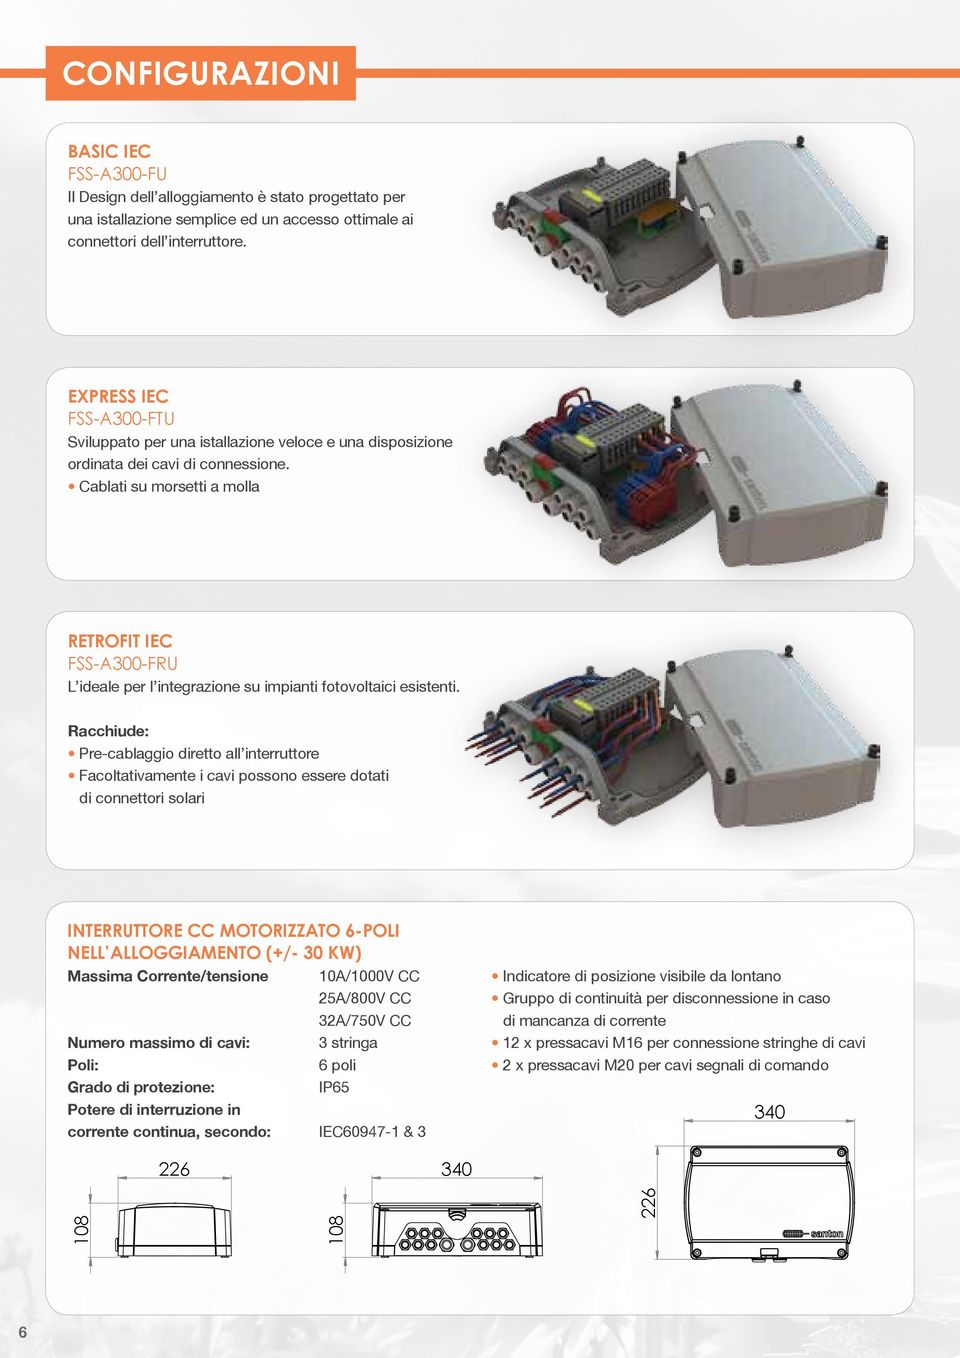 Cablati su morsetti a molla RETROFIT IEC FSS-A300-FRU L ideale per l integrazione su impianti fotovoltaici esistenti.